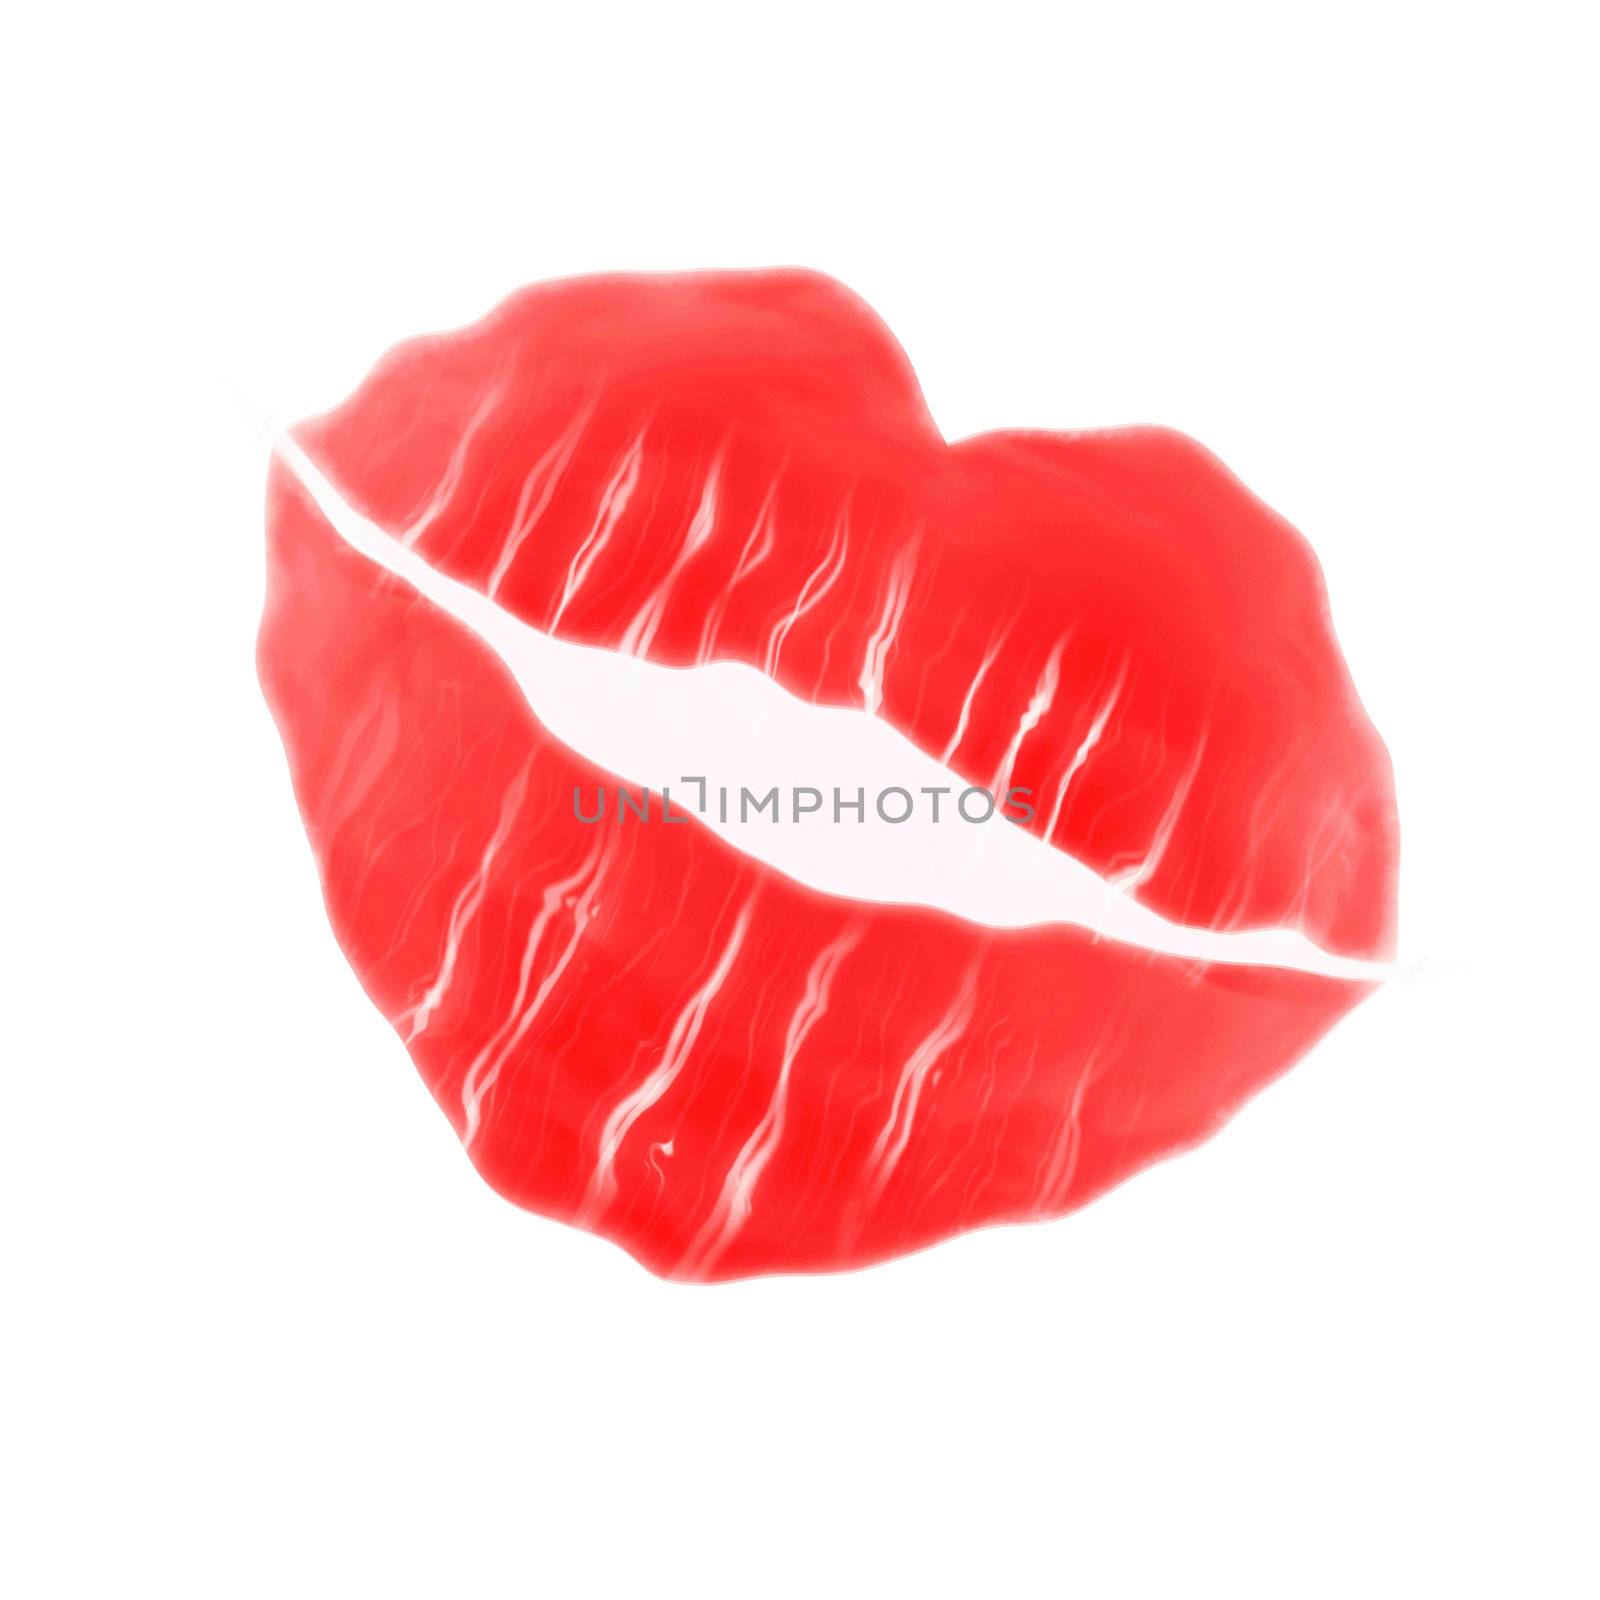 sweet red lips by hospitalera